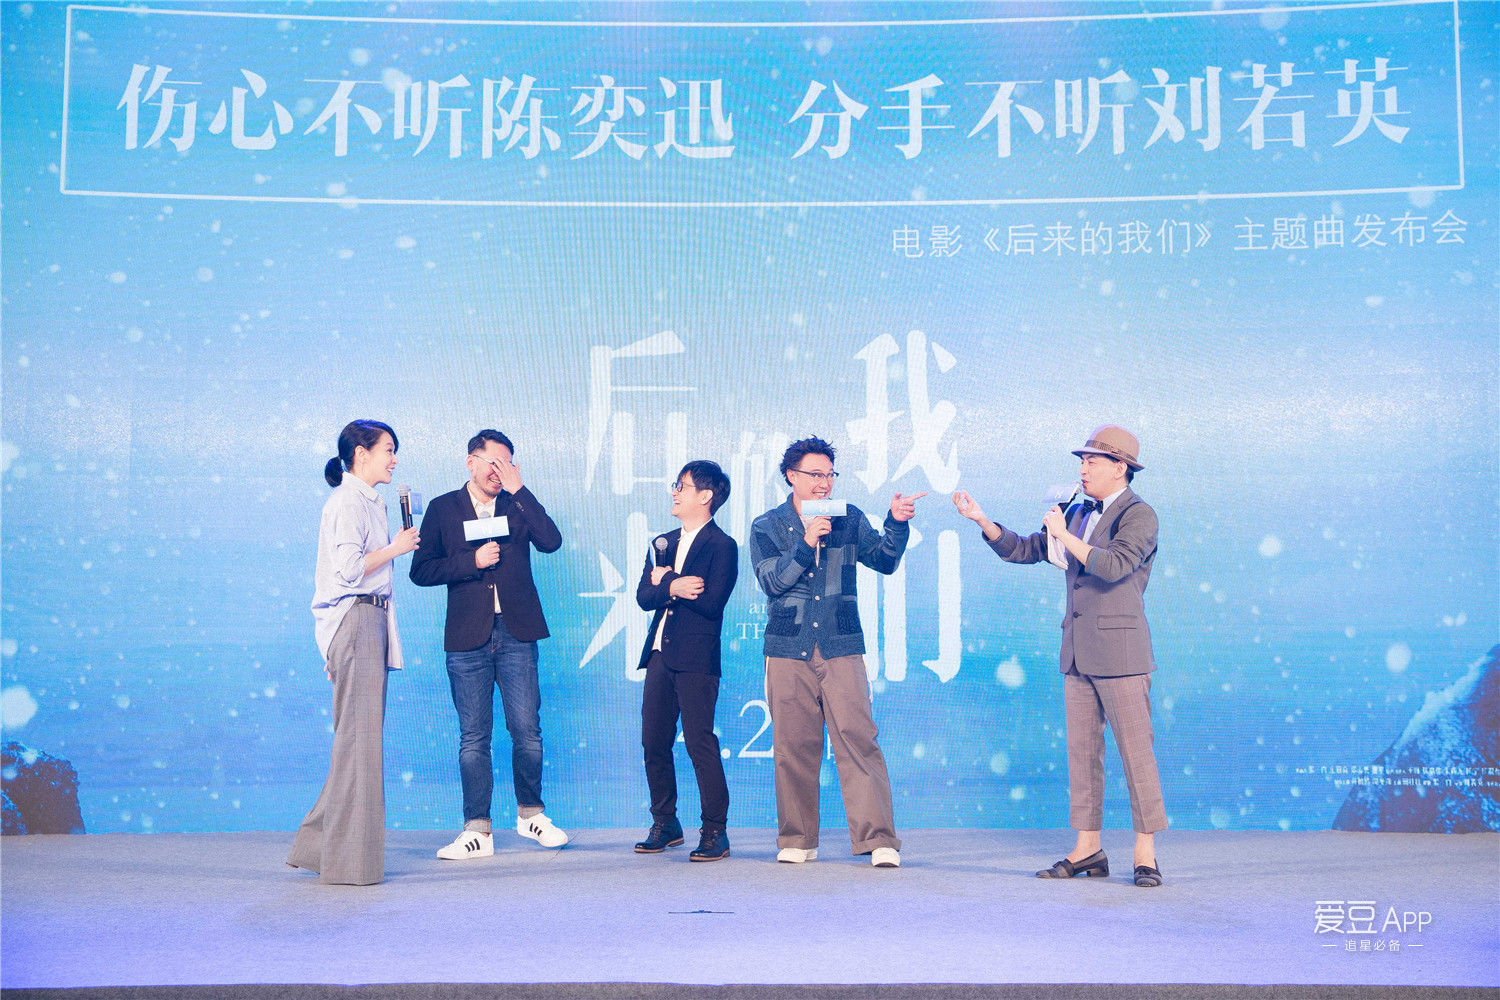 [消息]电影《后来的我们》主题歌《我们》发布会10日举行 刘若英大赞